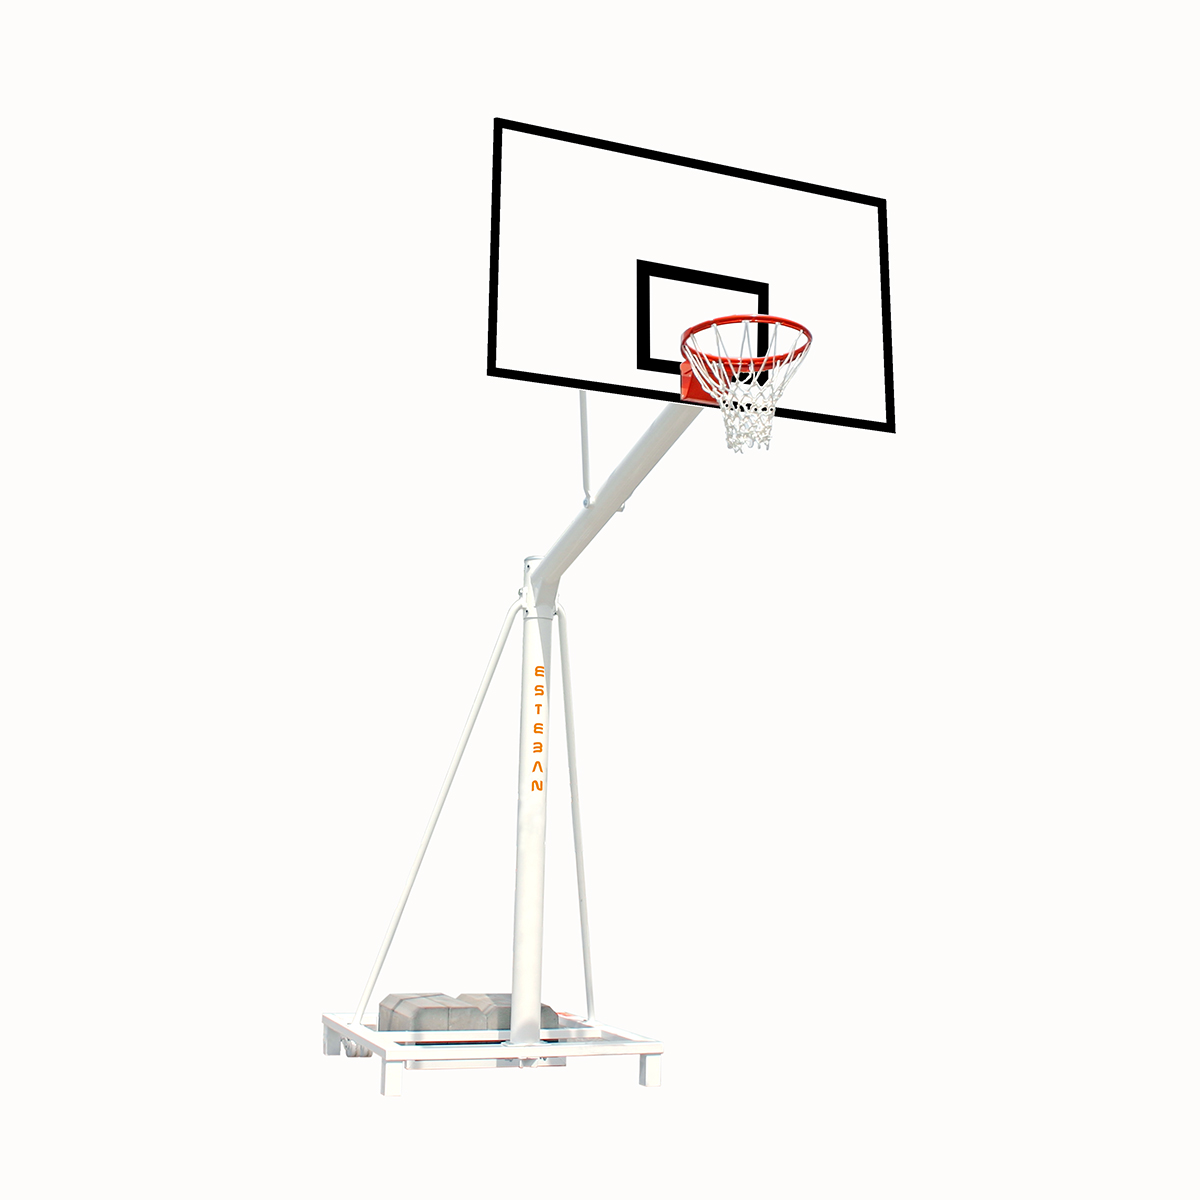 Canasta baloncesto trasladable tablero fibra de vidrio extensión 125 cm  BT12525-1 – ESTEBAN SG&E